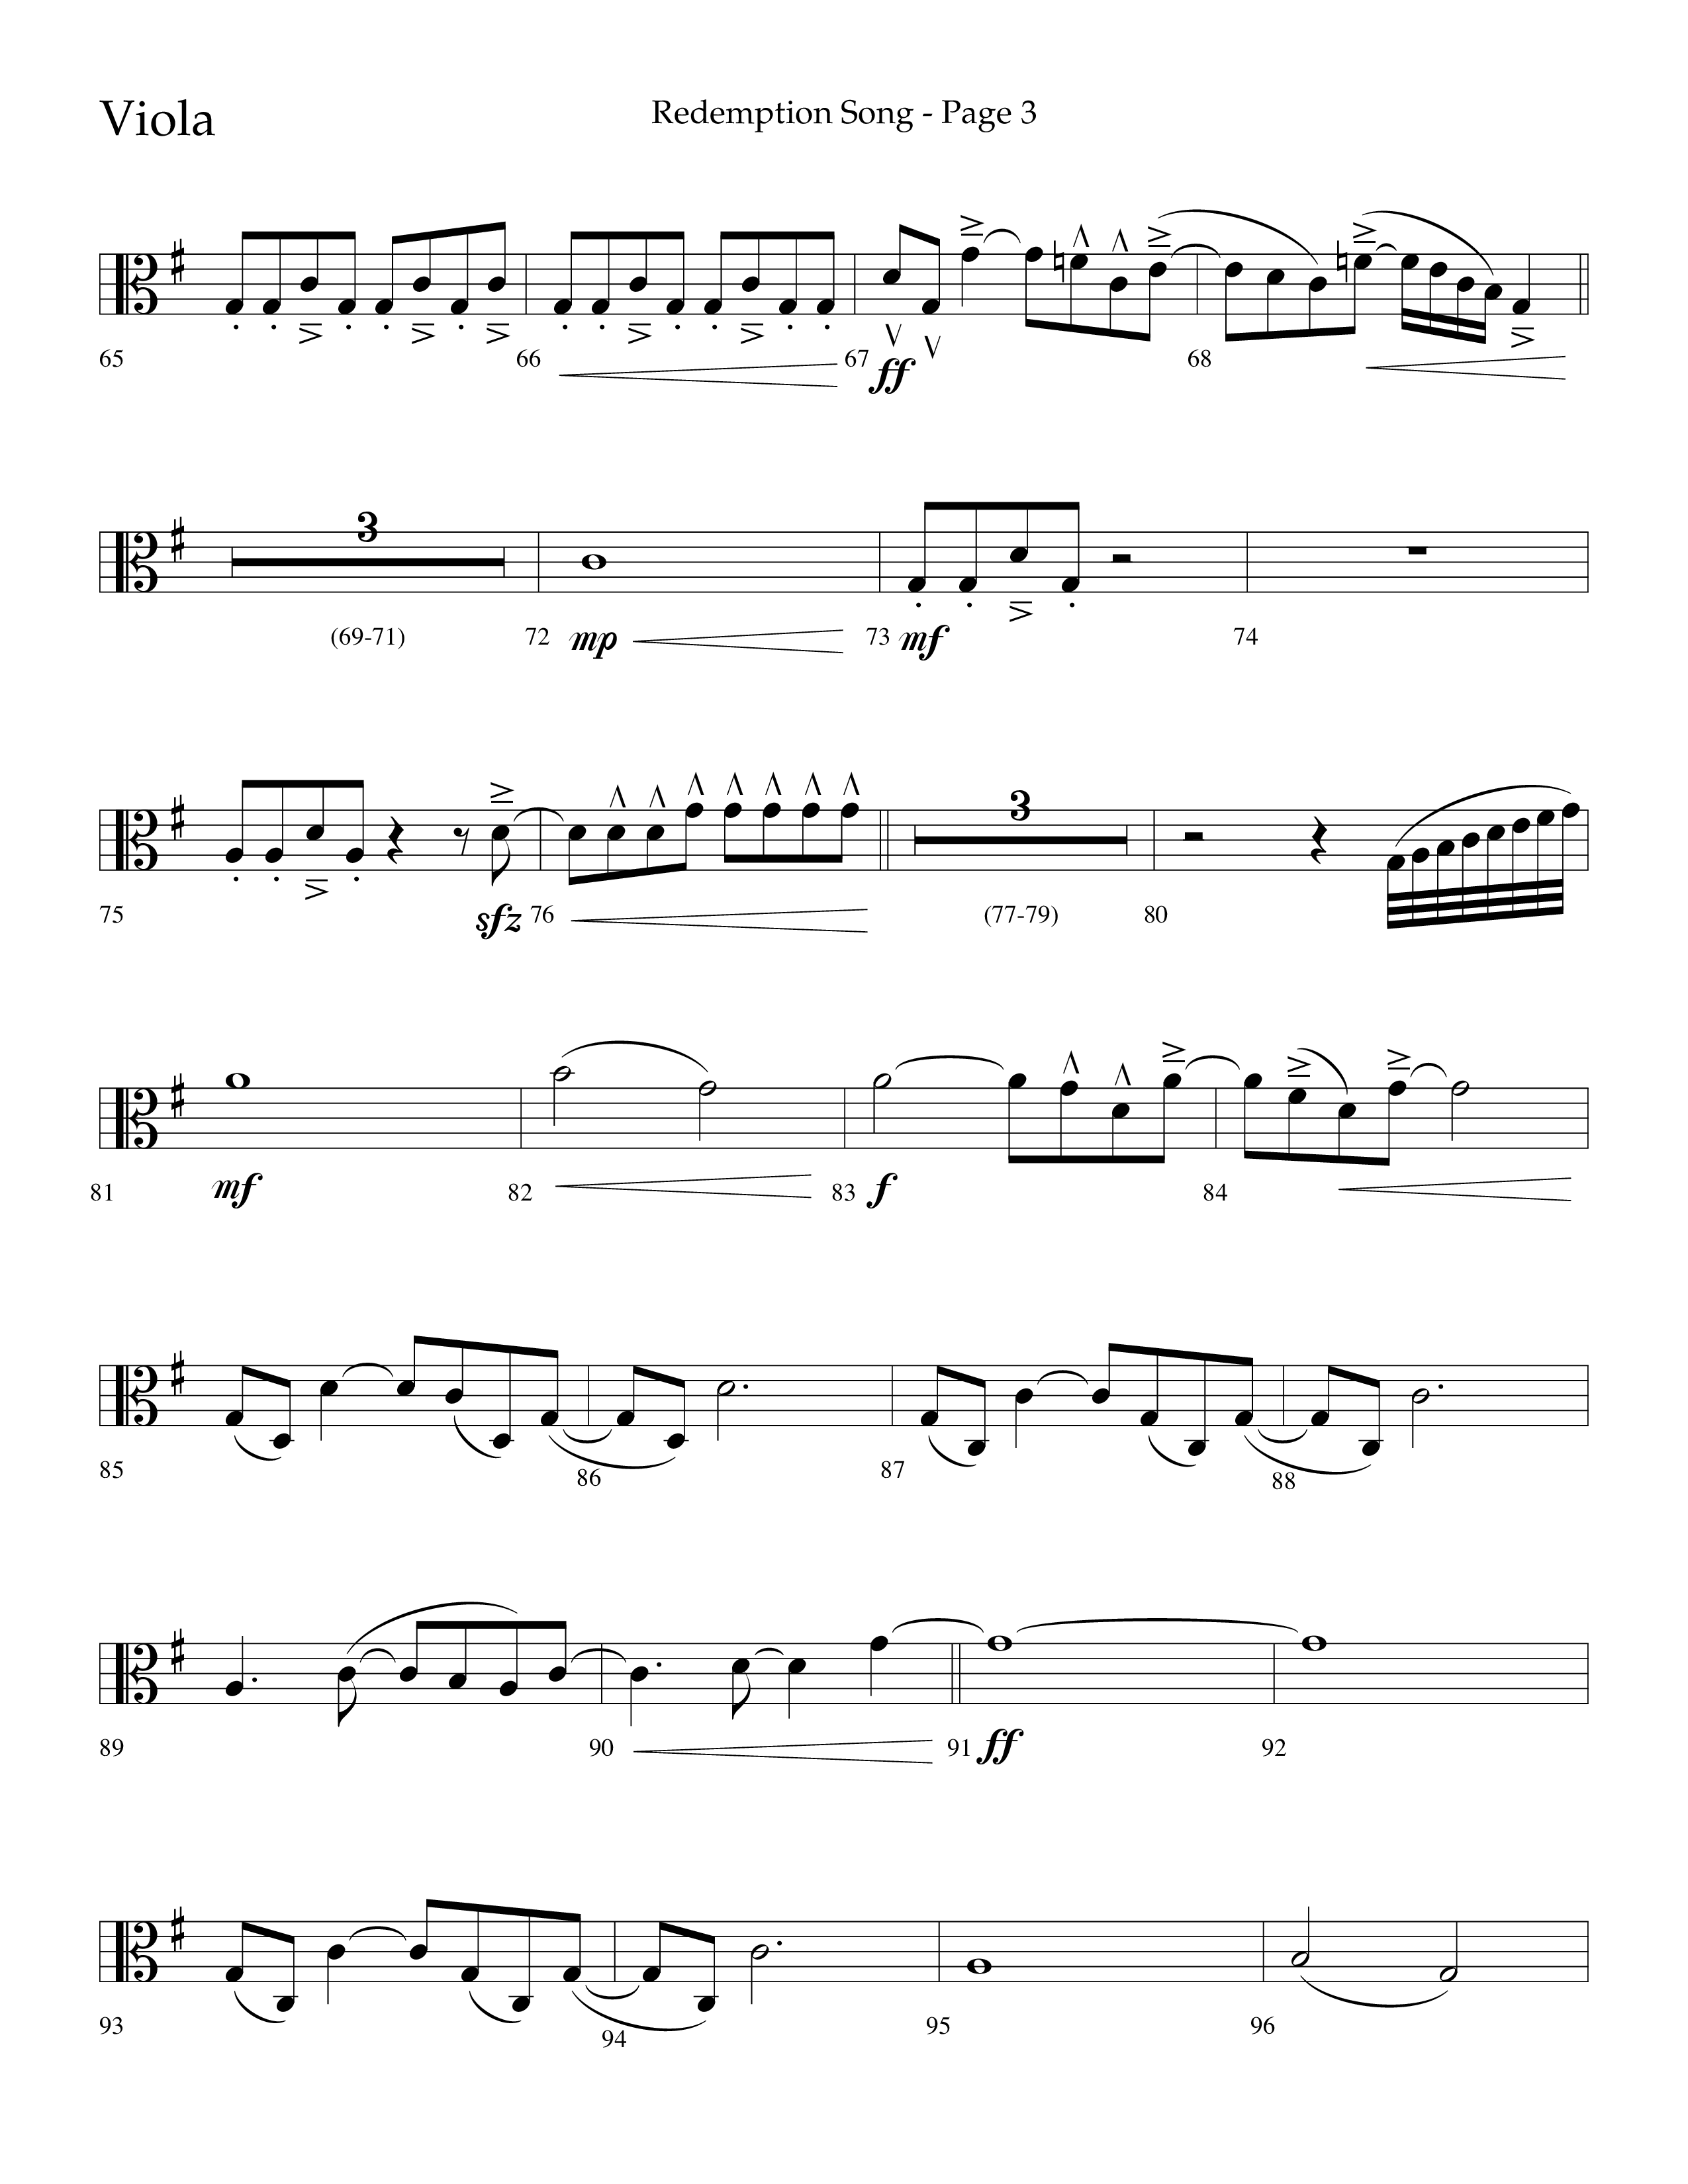 Redemption Song (Choral Anthem SATB) Viola (Lifeway Choral / Arr. Cliff Duren)